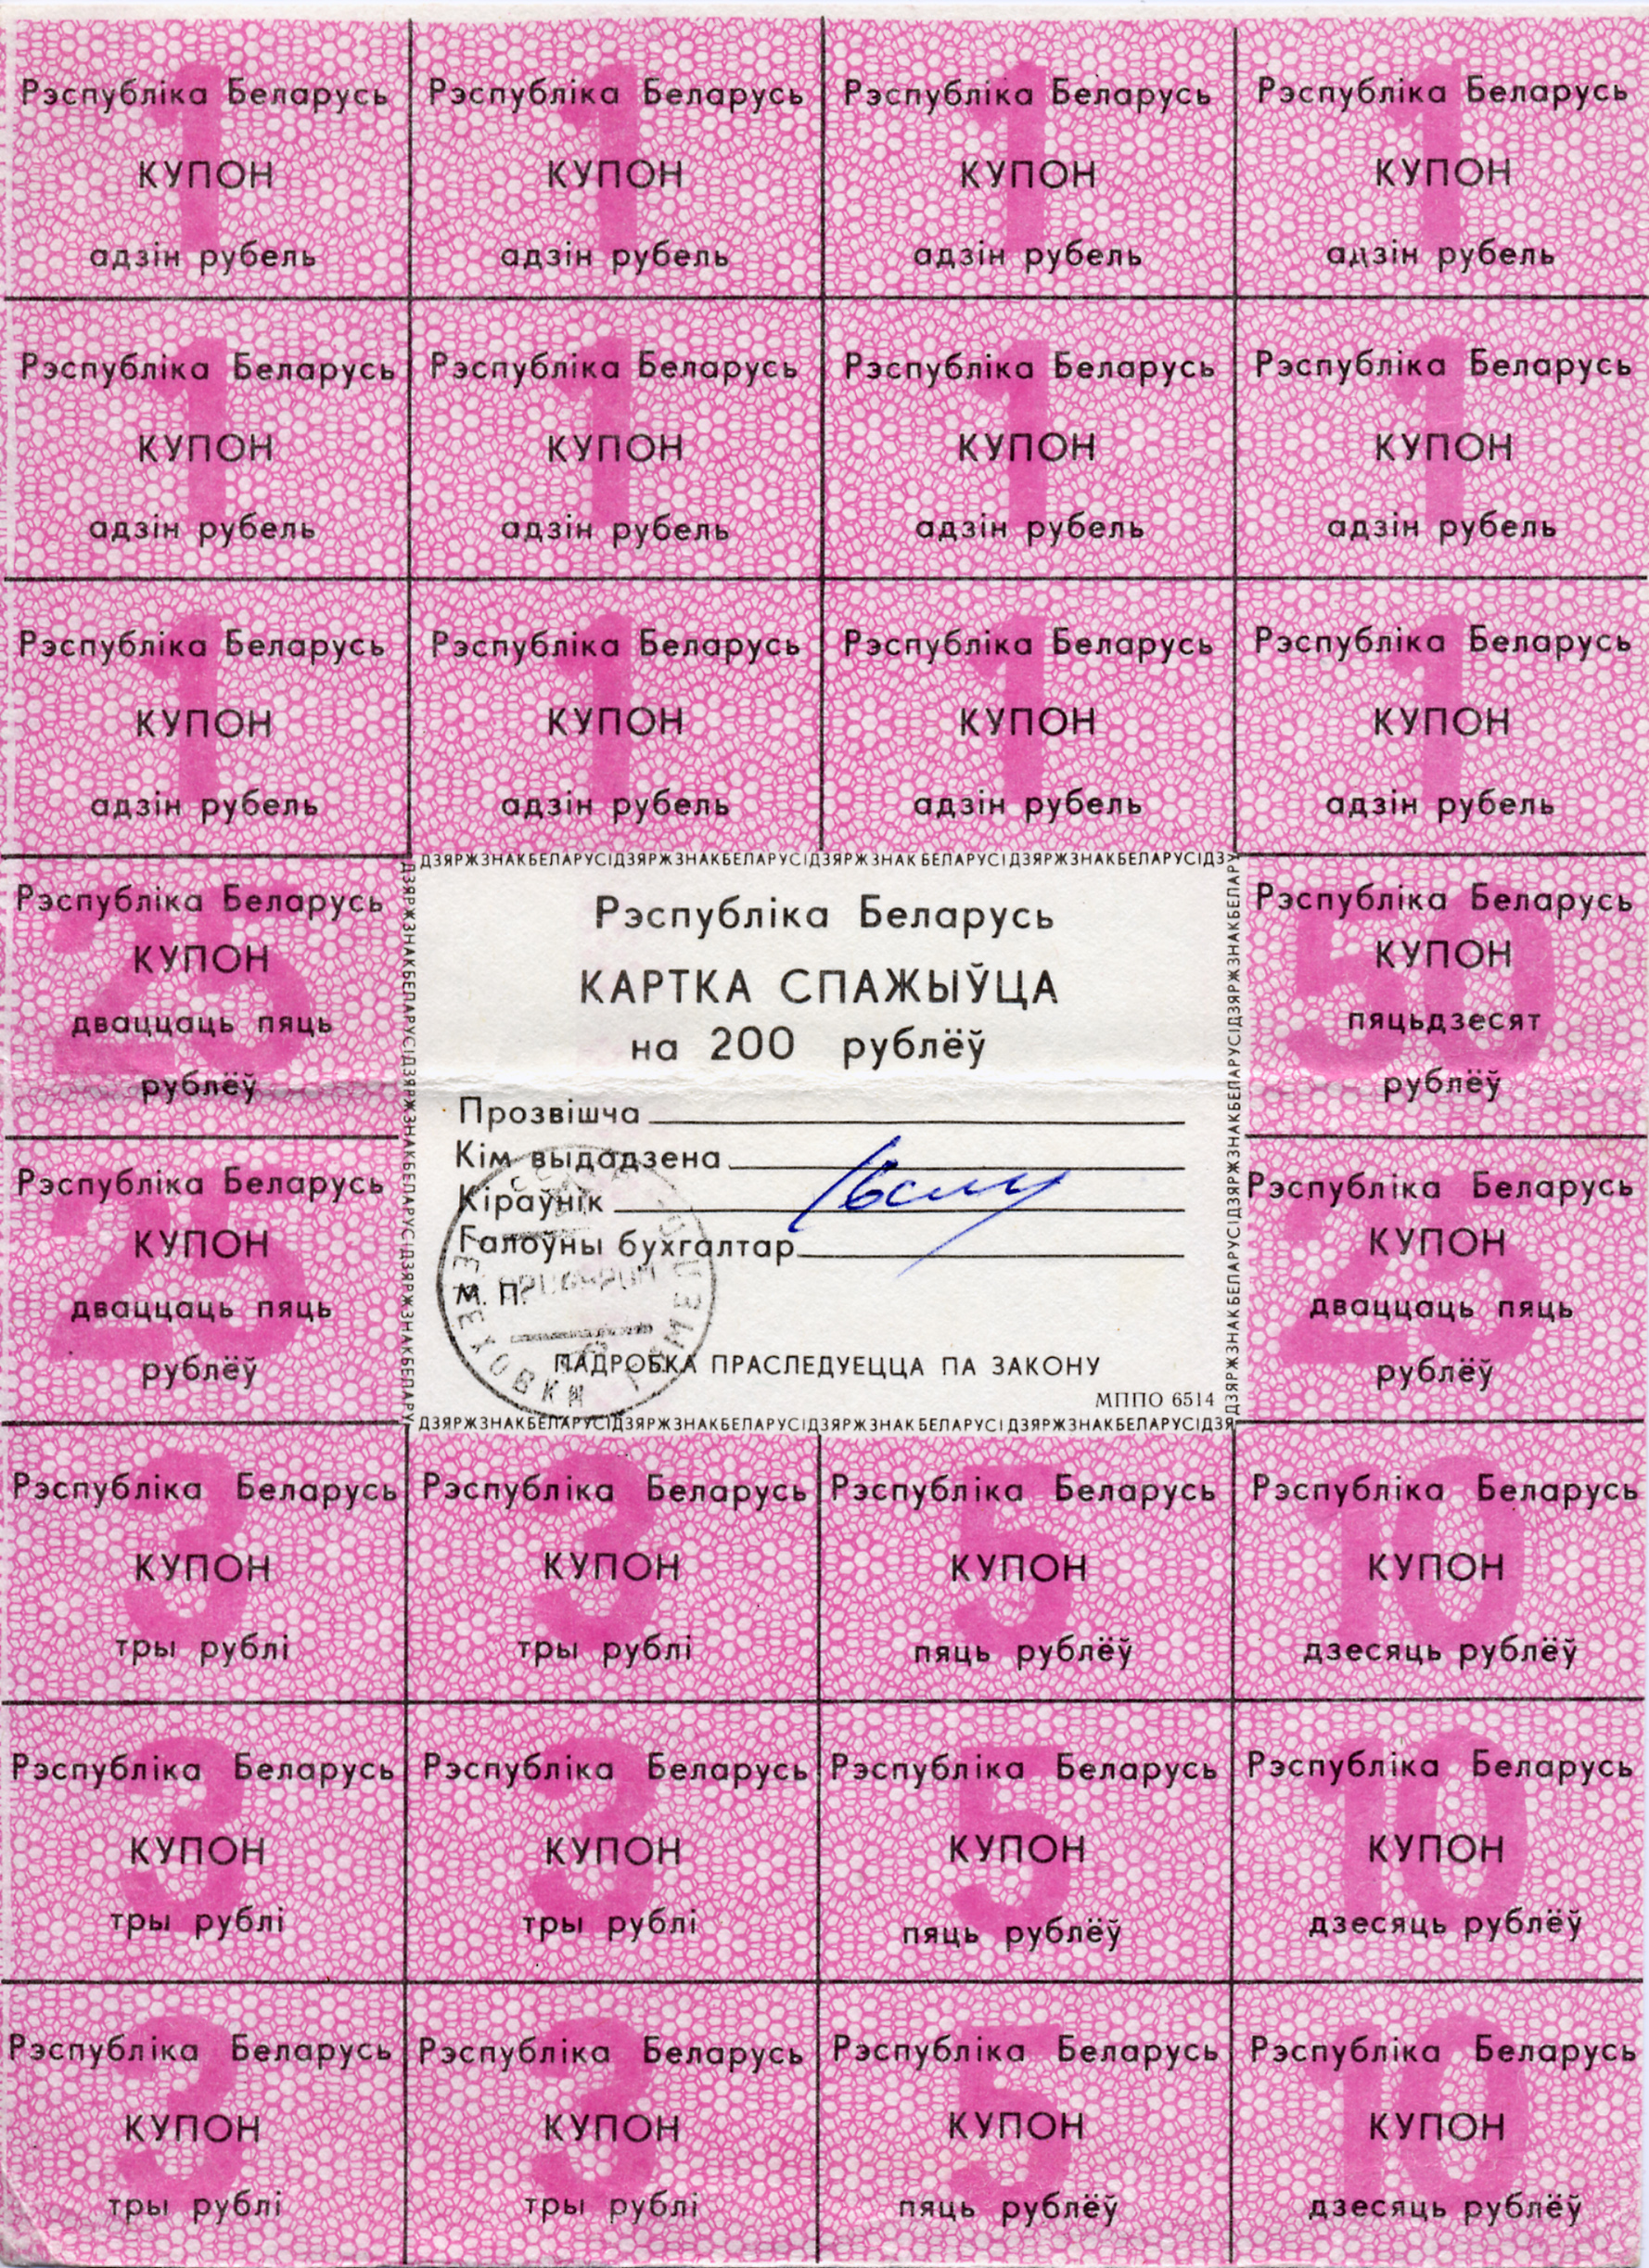 Belarus-1992-Consumer's Card-200